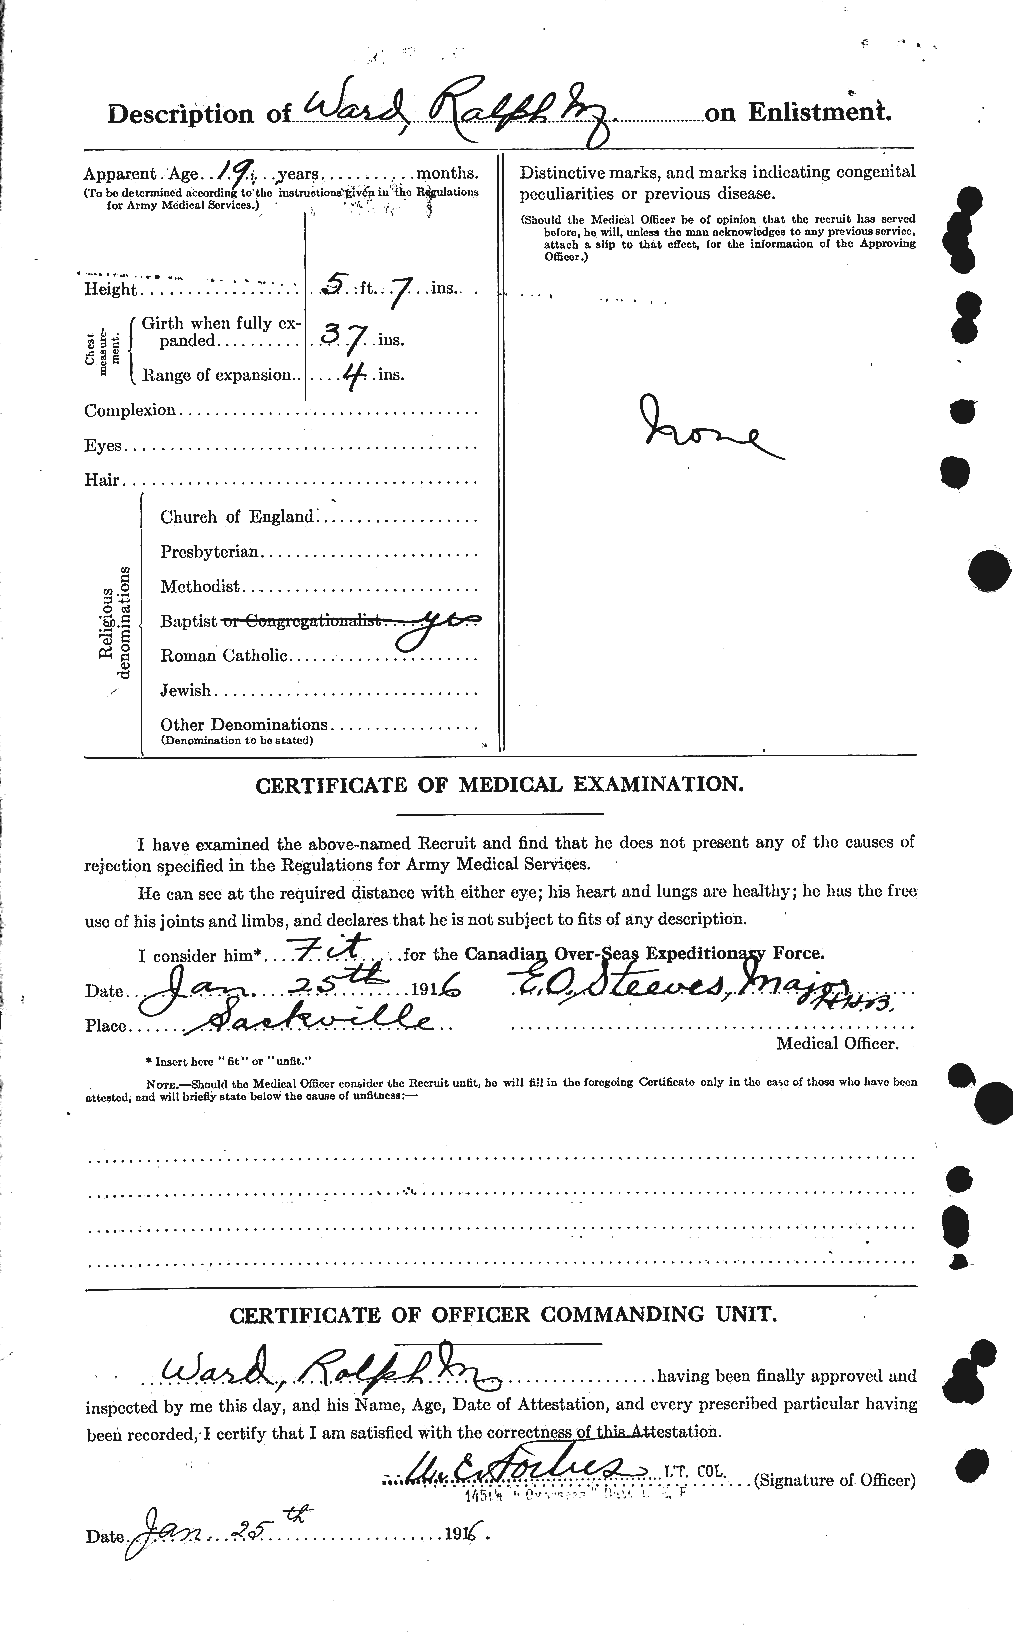 Dossiers du Personnel de la Première Guerre mondiale - CEC 659634b